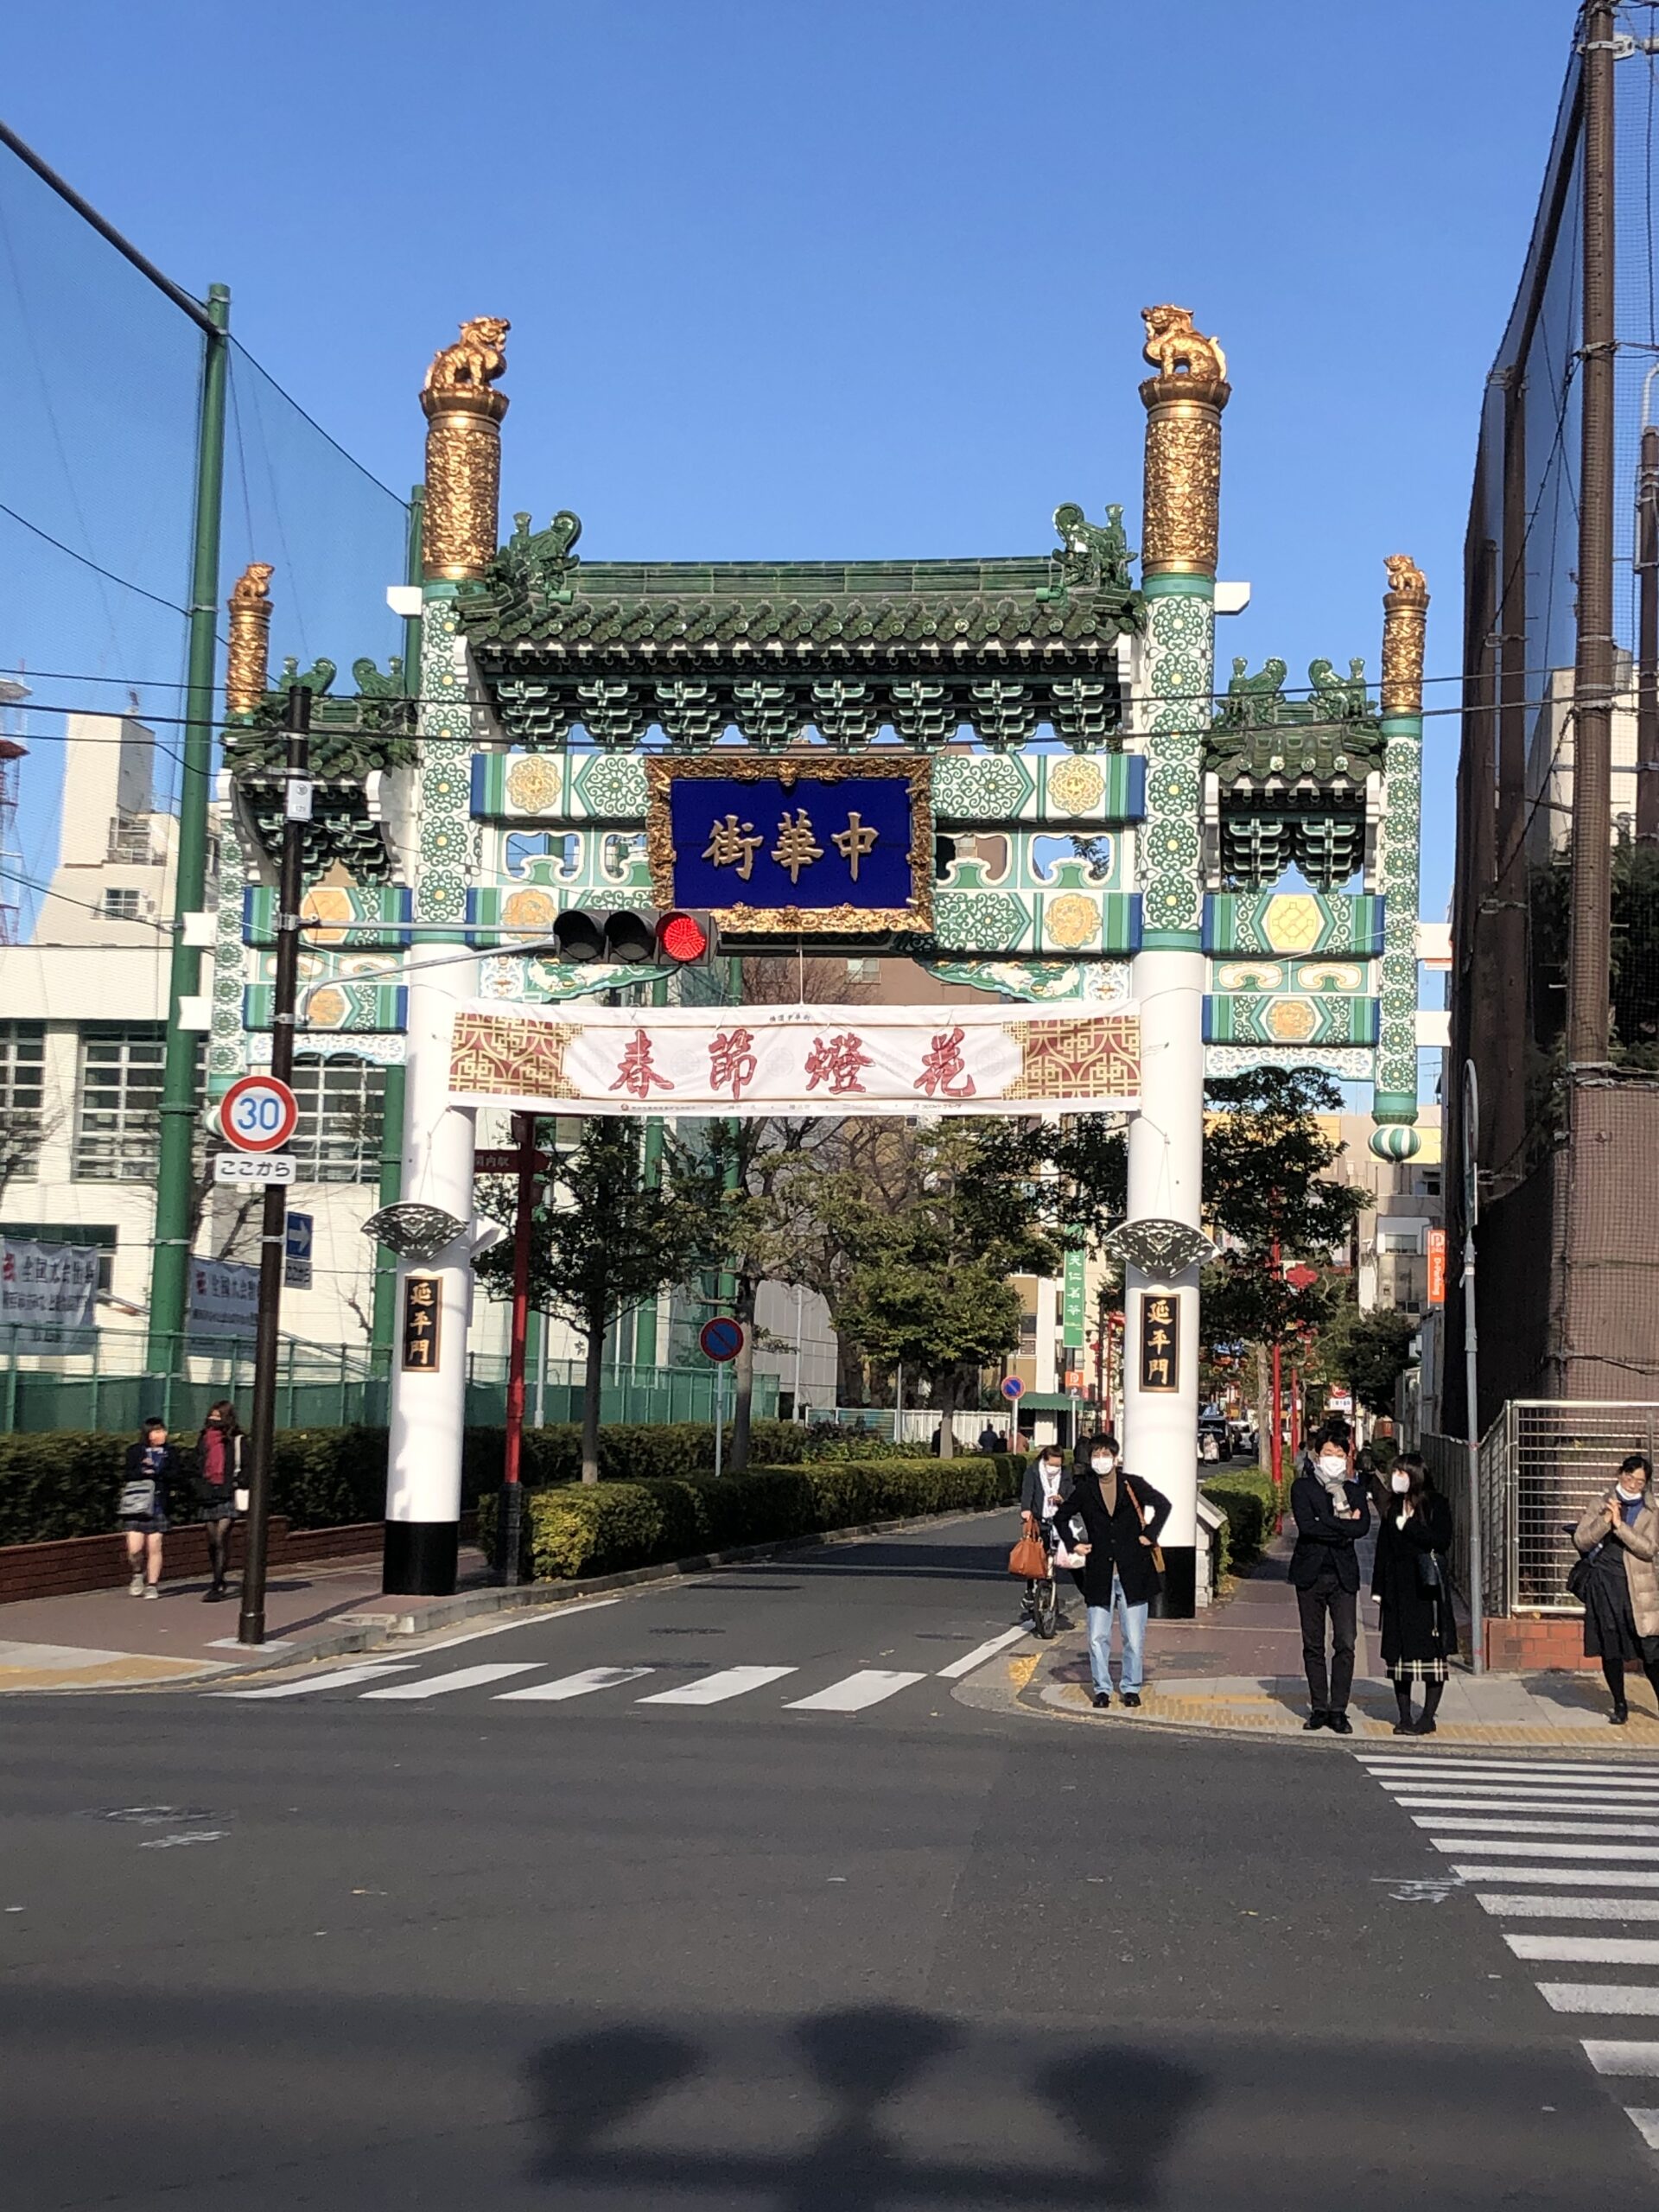 【アイモバリアルグルメツアー】横浜の中華を求めて散策してみた